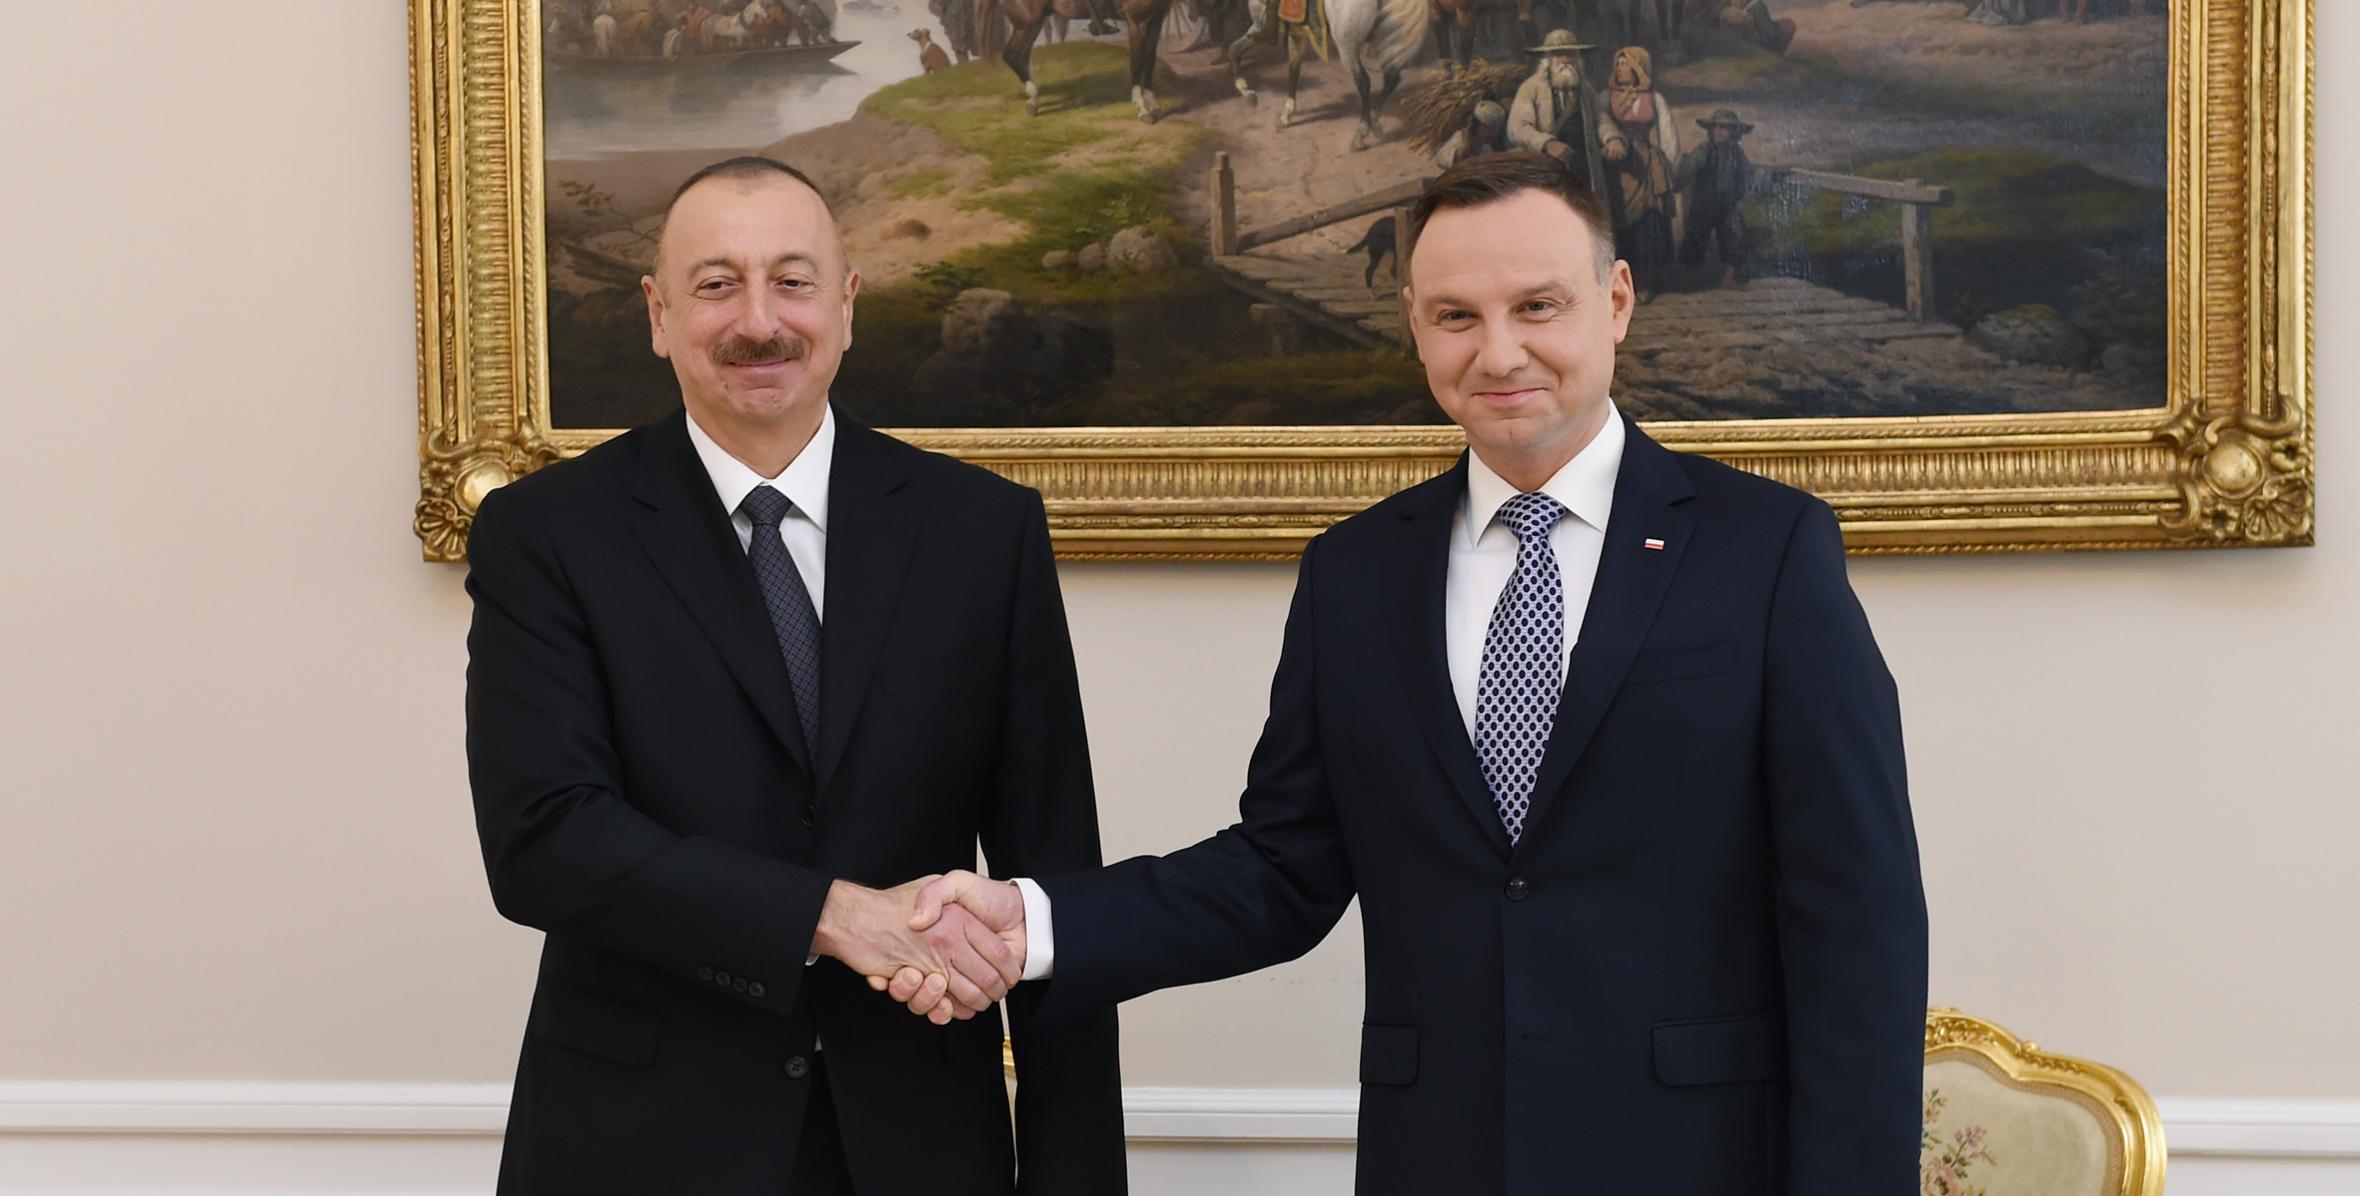 Состоялась встреча президентов Азербайджана и Польши один на один